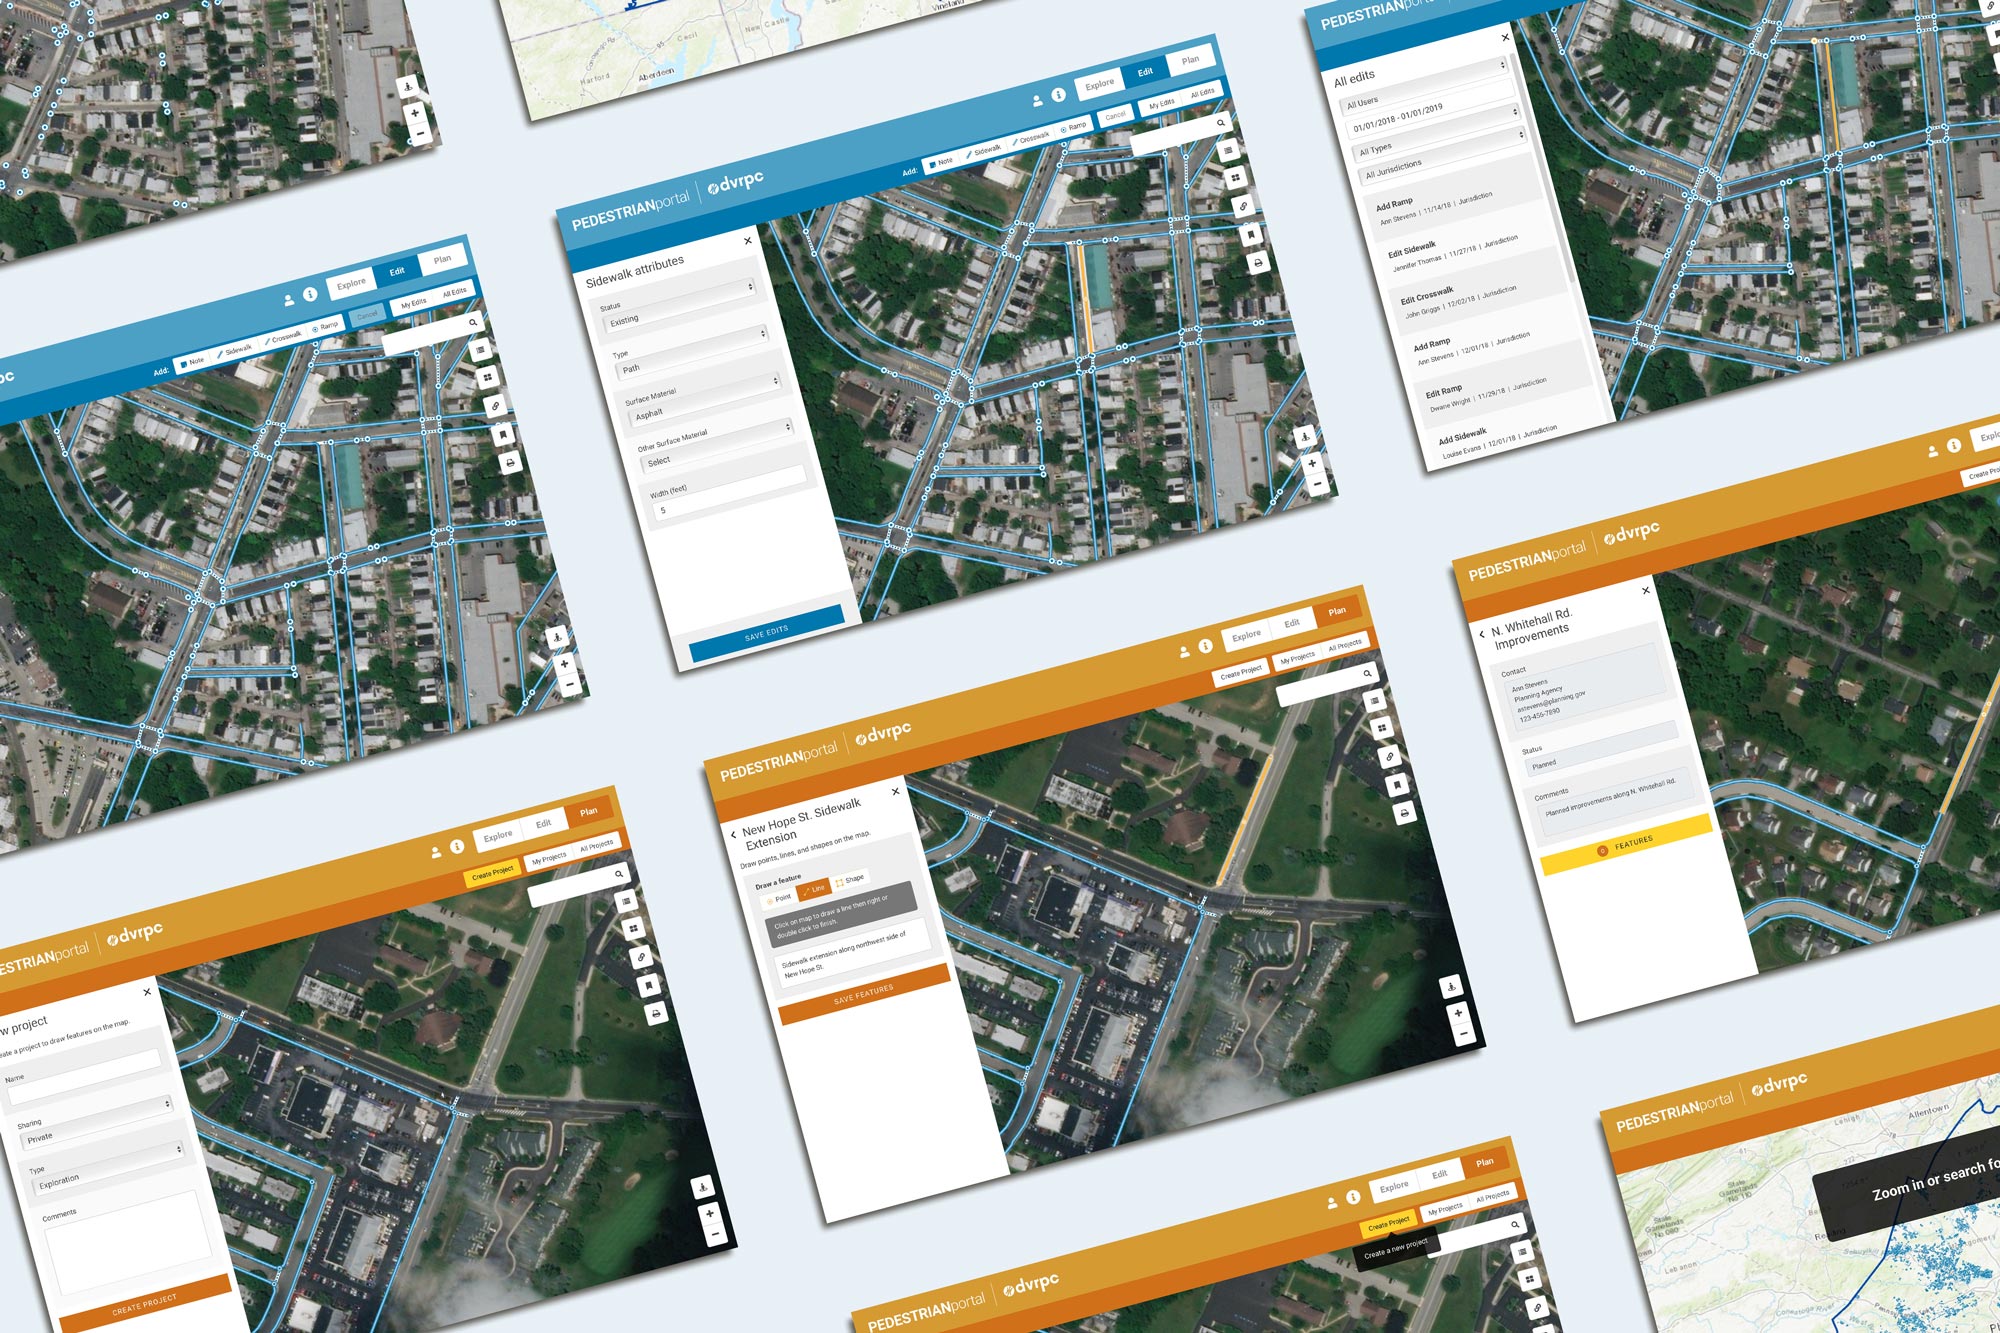 Pedestrian Planning Portal by Tierra Plan